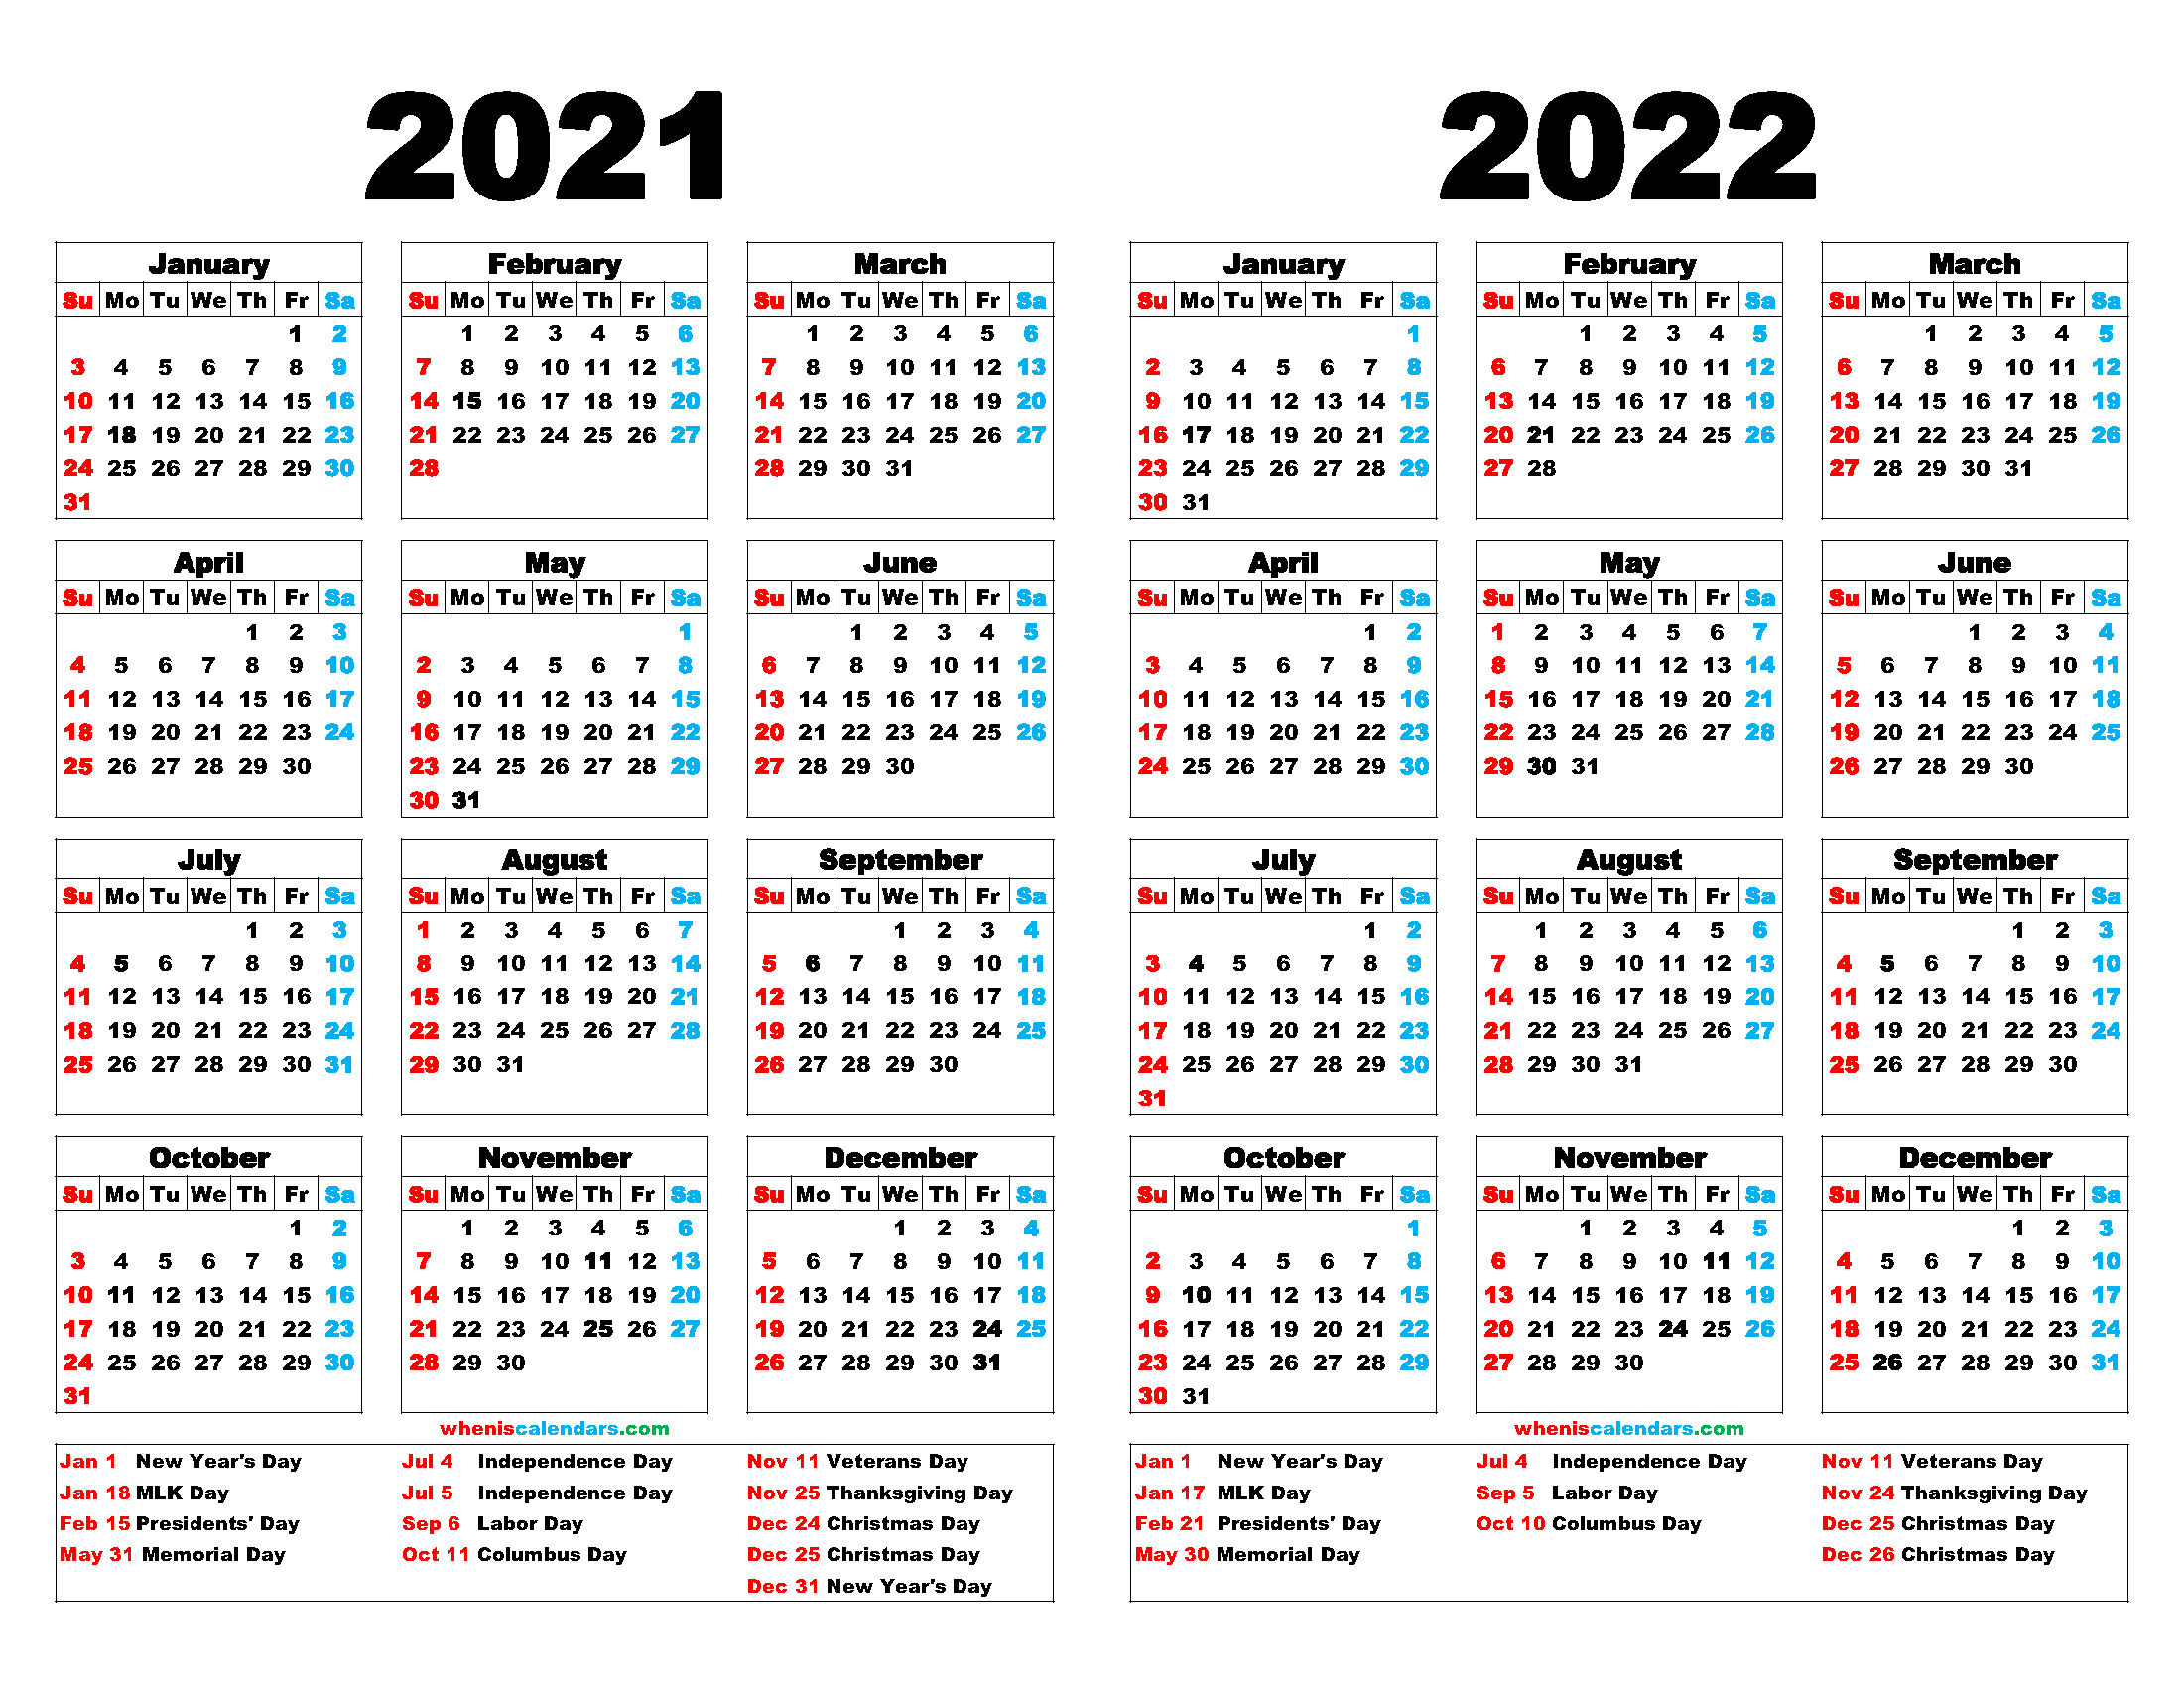 Printable Saturdays Of 201 And 2021 Ten Free Printable Calendar 2021